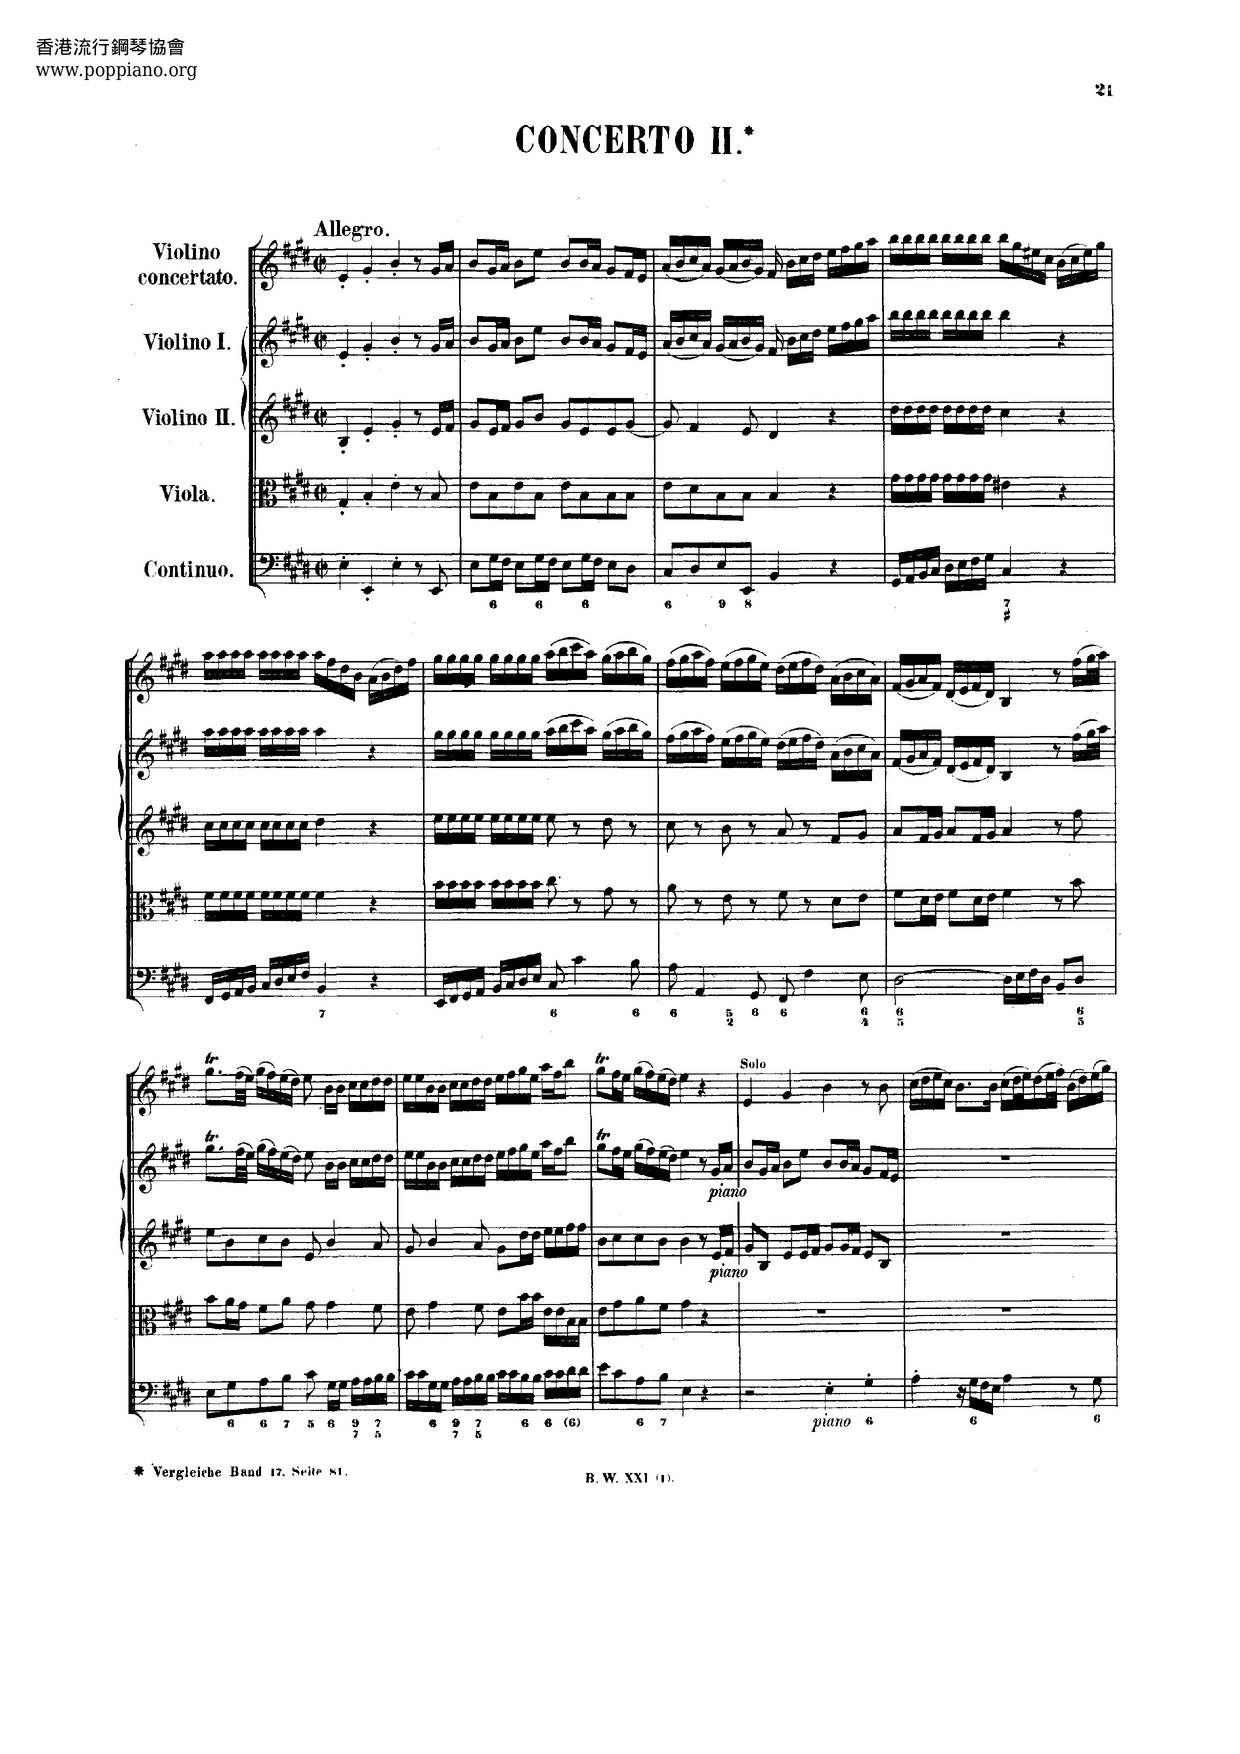 Montero: Adagio (After Bach's Violin Concerto No. 2, BWV 1042)ピアノ譜